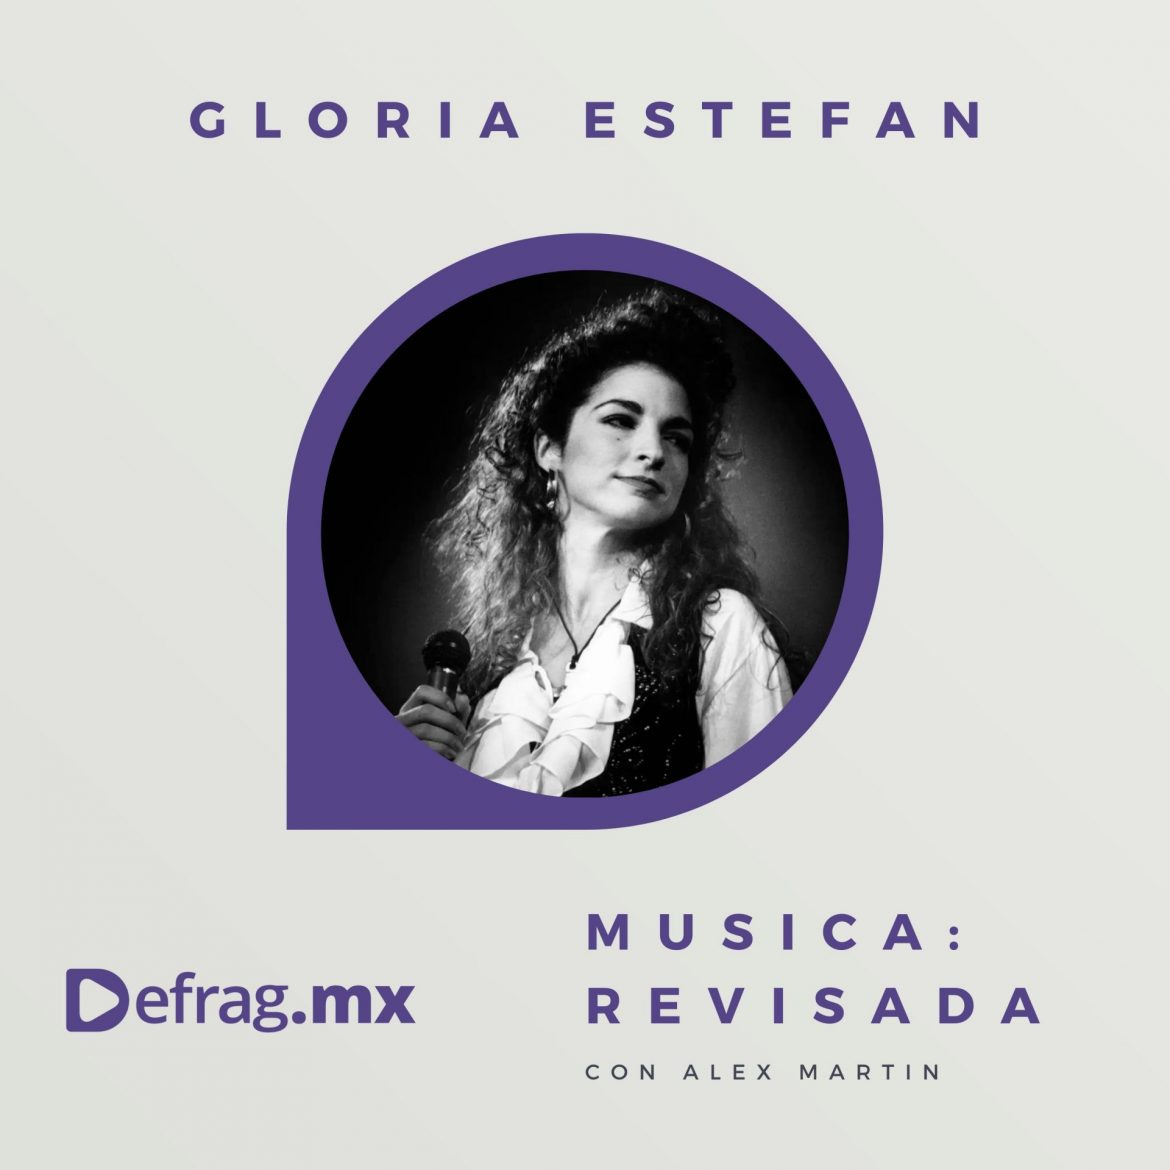 Defrag.mx Podcast Música Revisada Gloria Estefan Cuts Both Ways